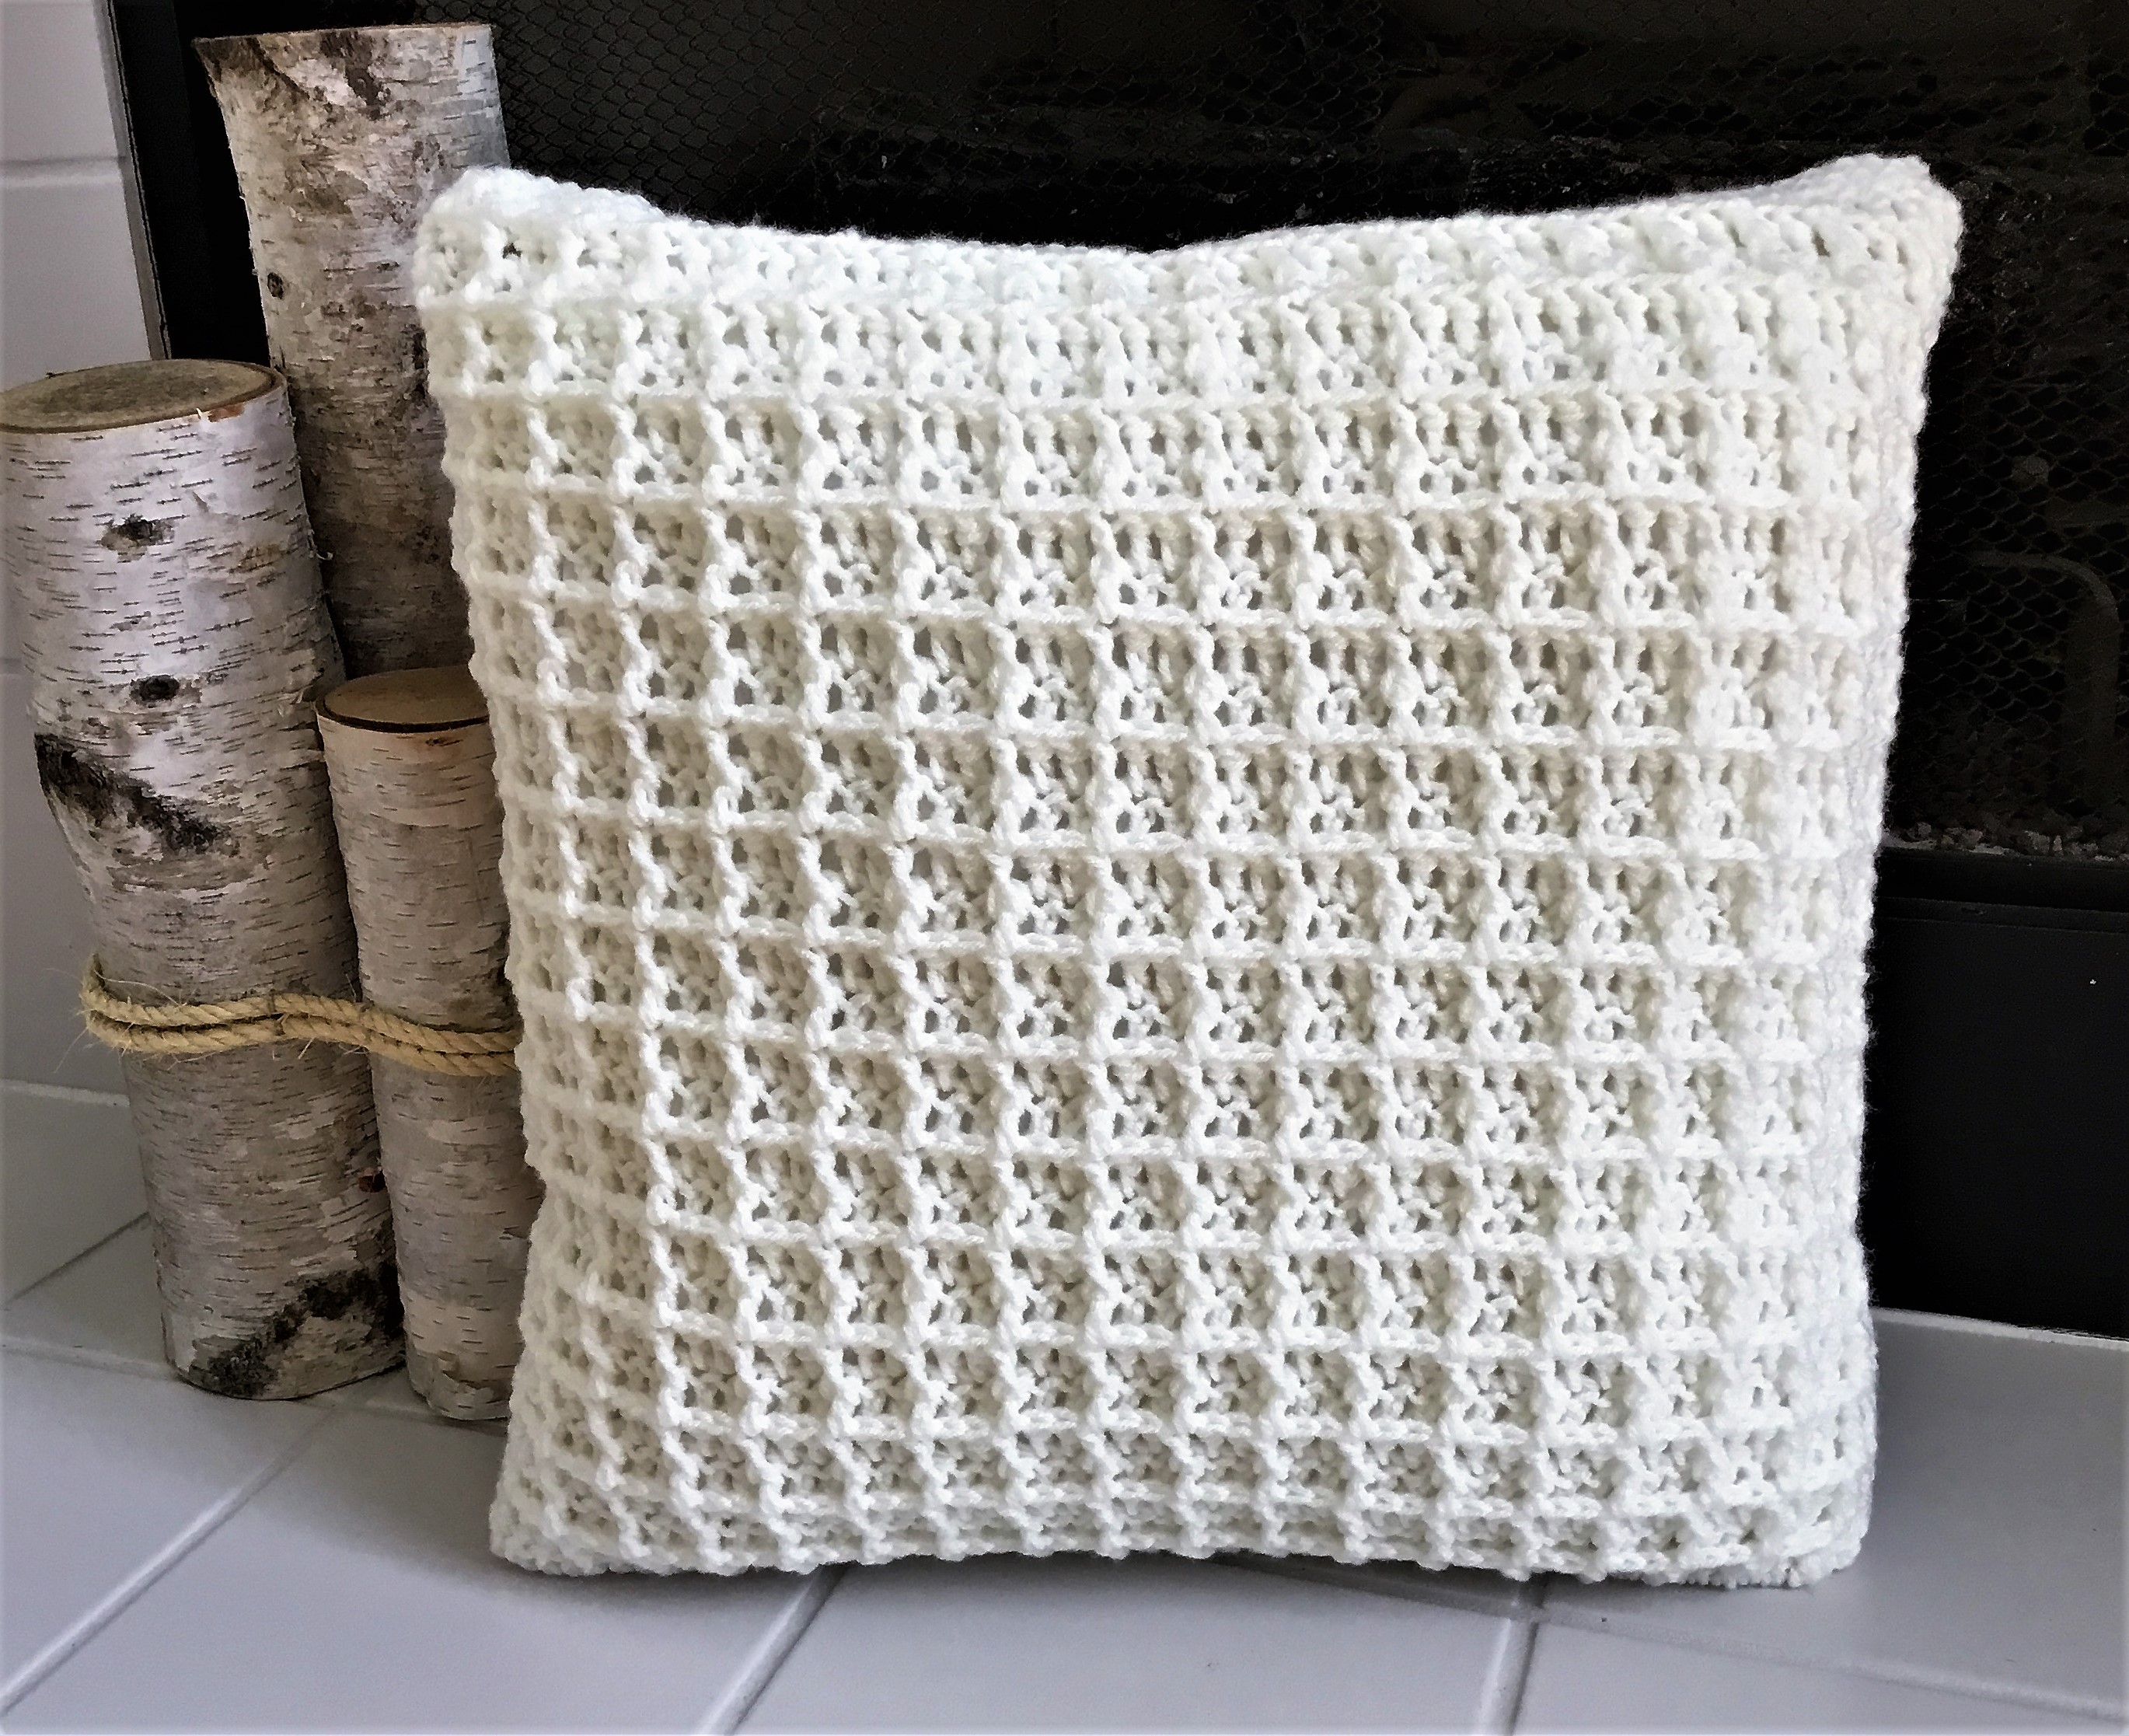 Buttery Soft Waffle Pillow - Crazy Cool Crochet